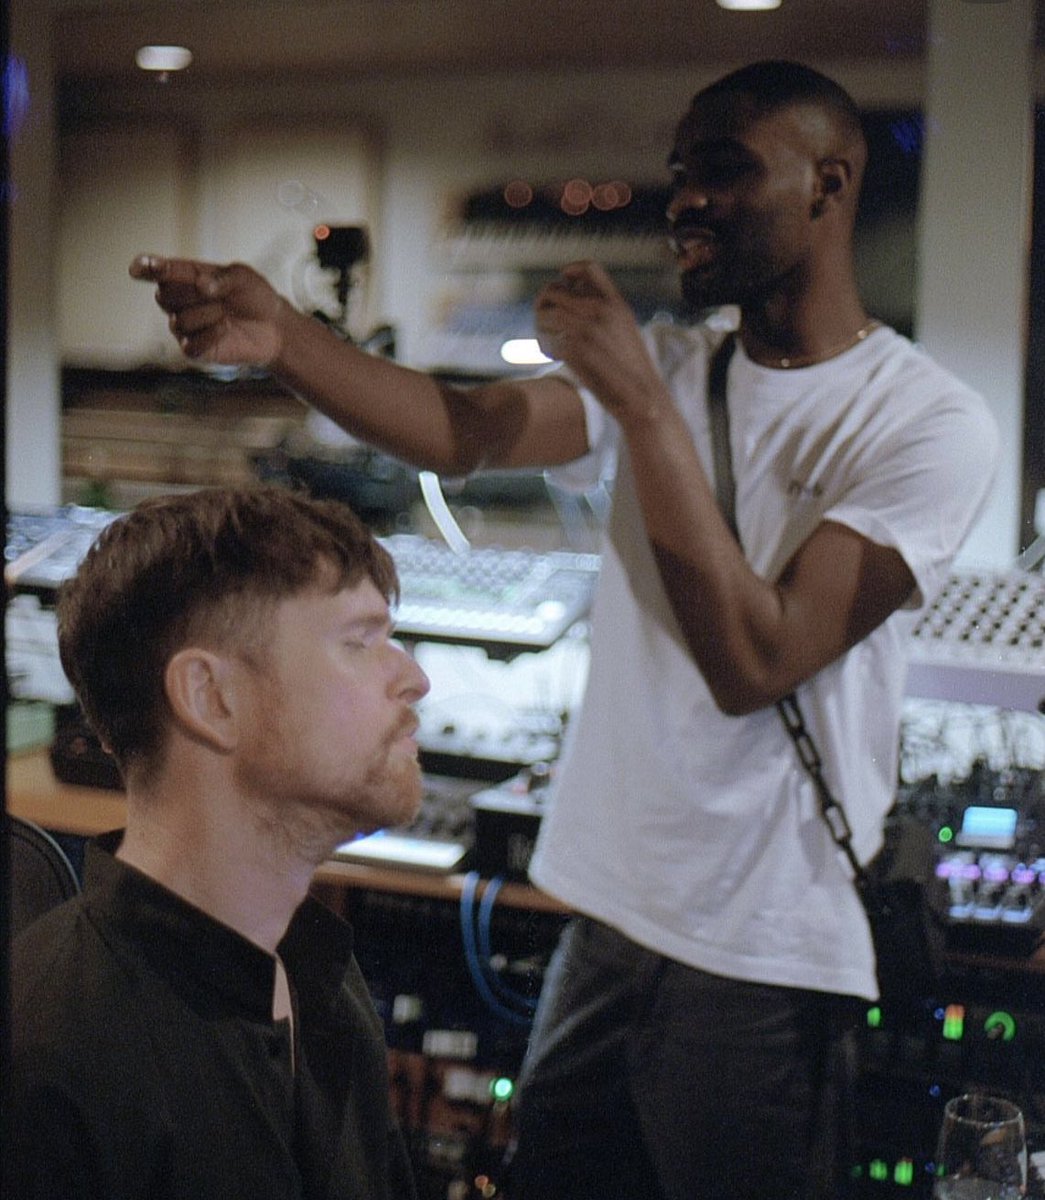 James Blake & Dave in the studio again 👀